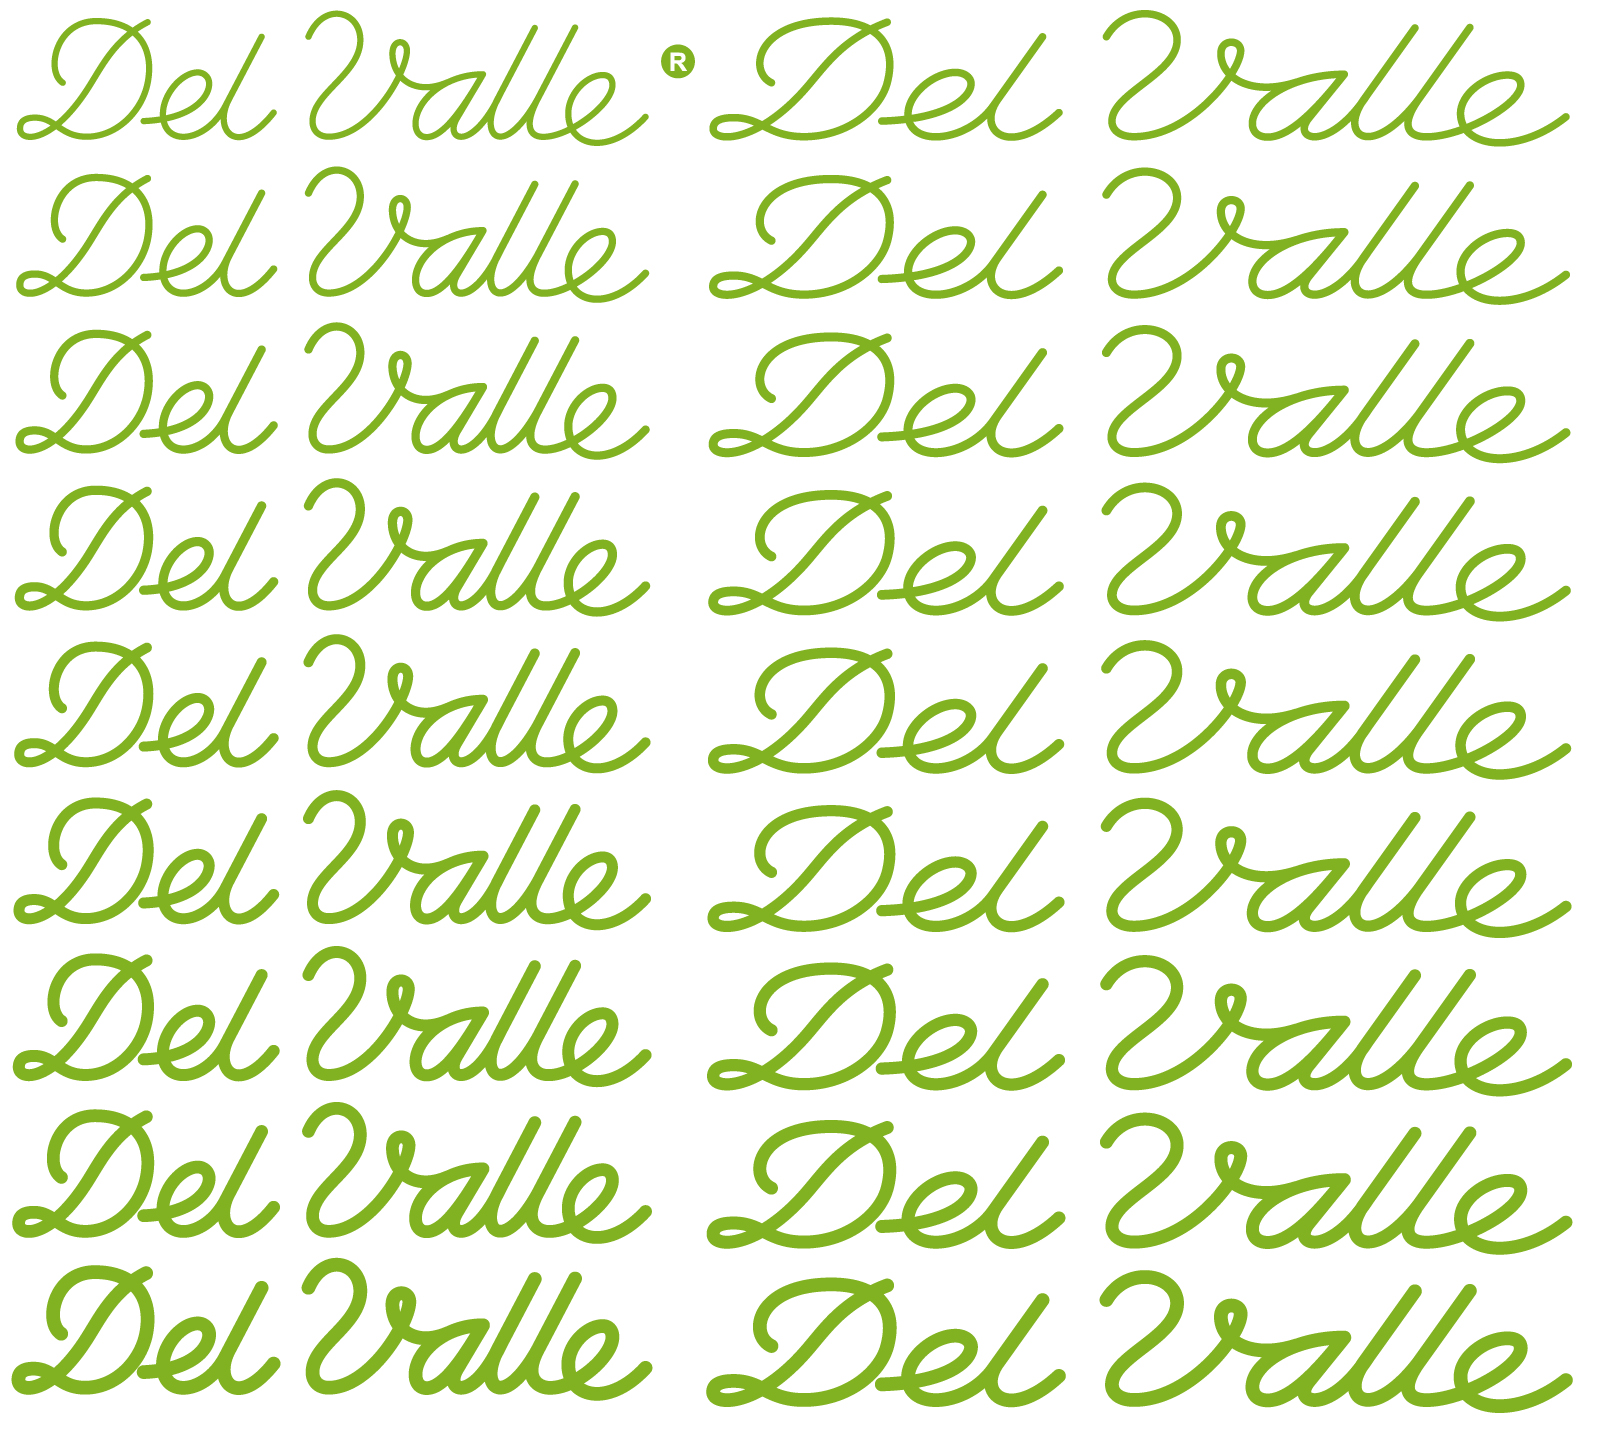 DEL VALLE, un homenaje a don Samuel del Valle Del%2520valle2